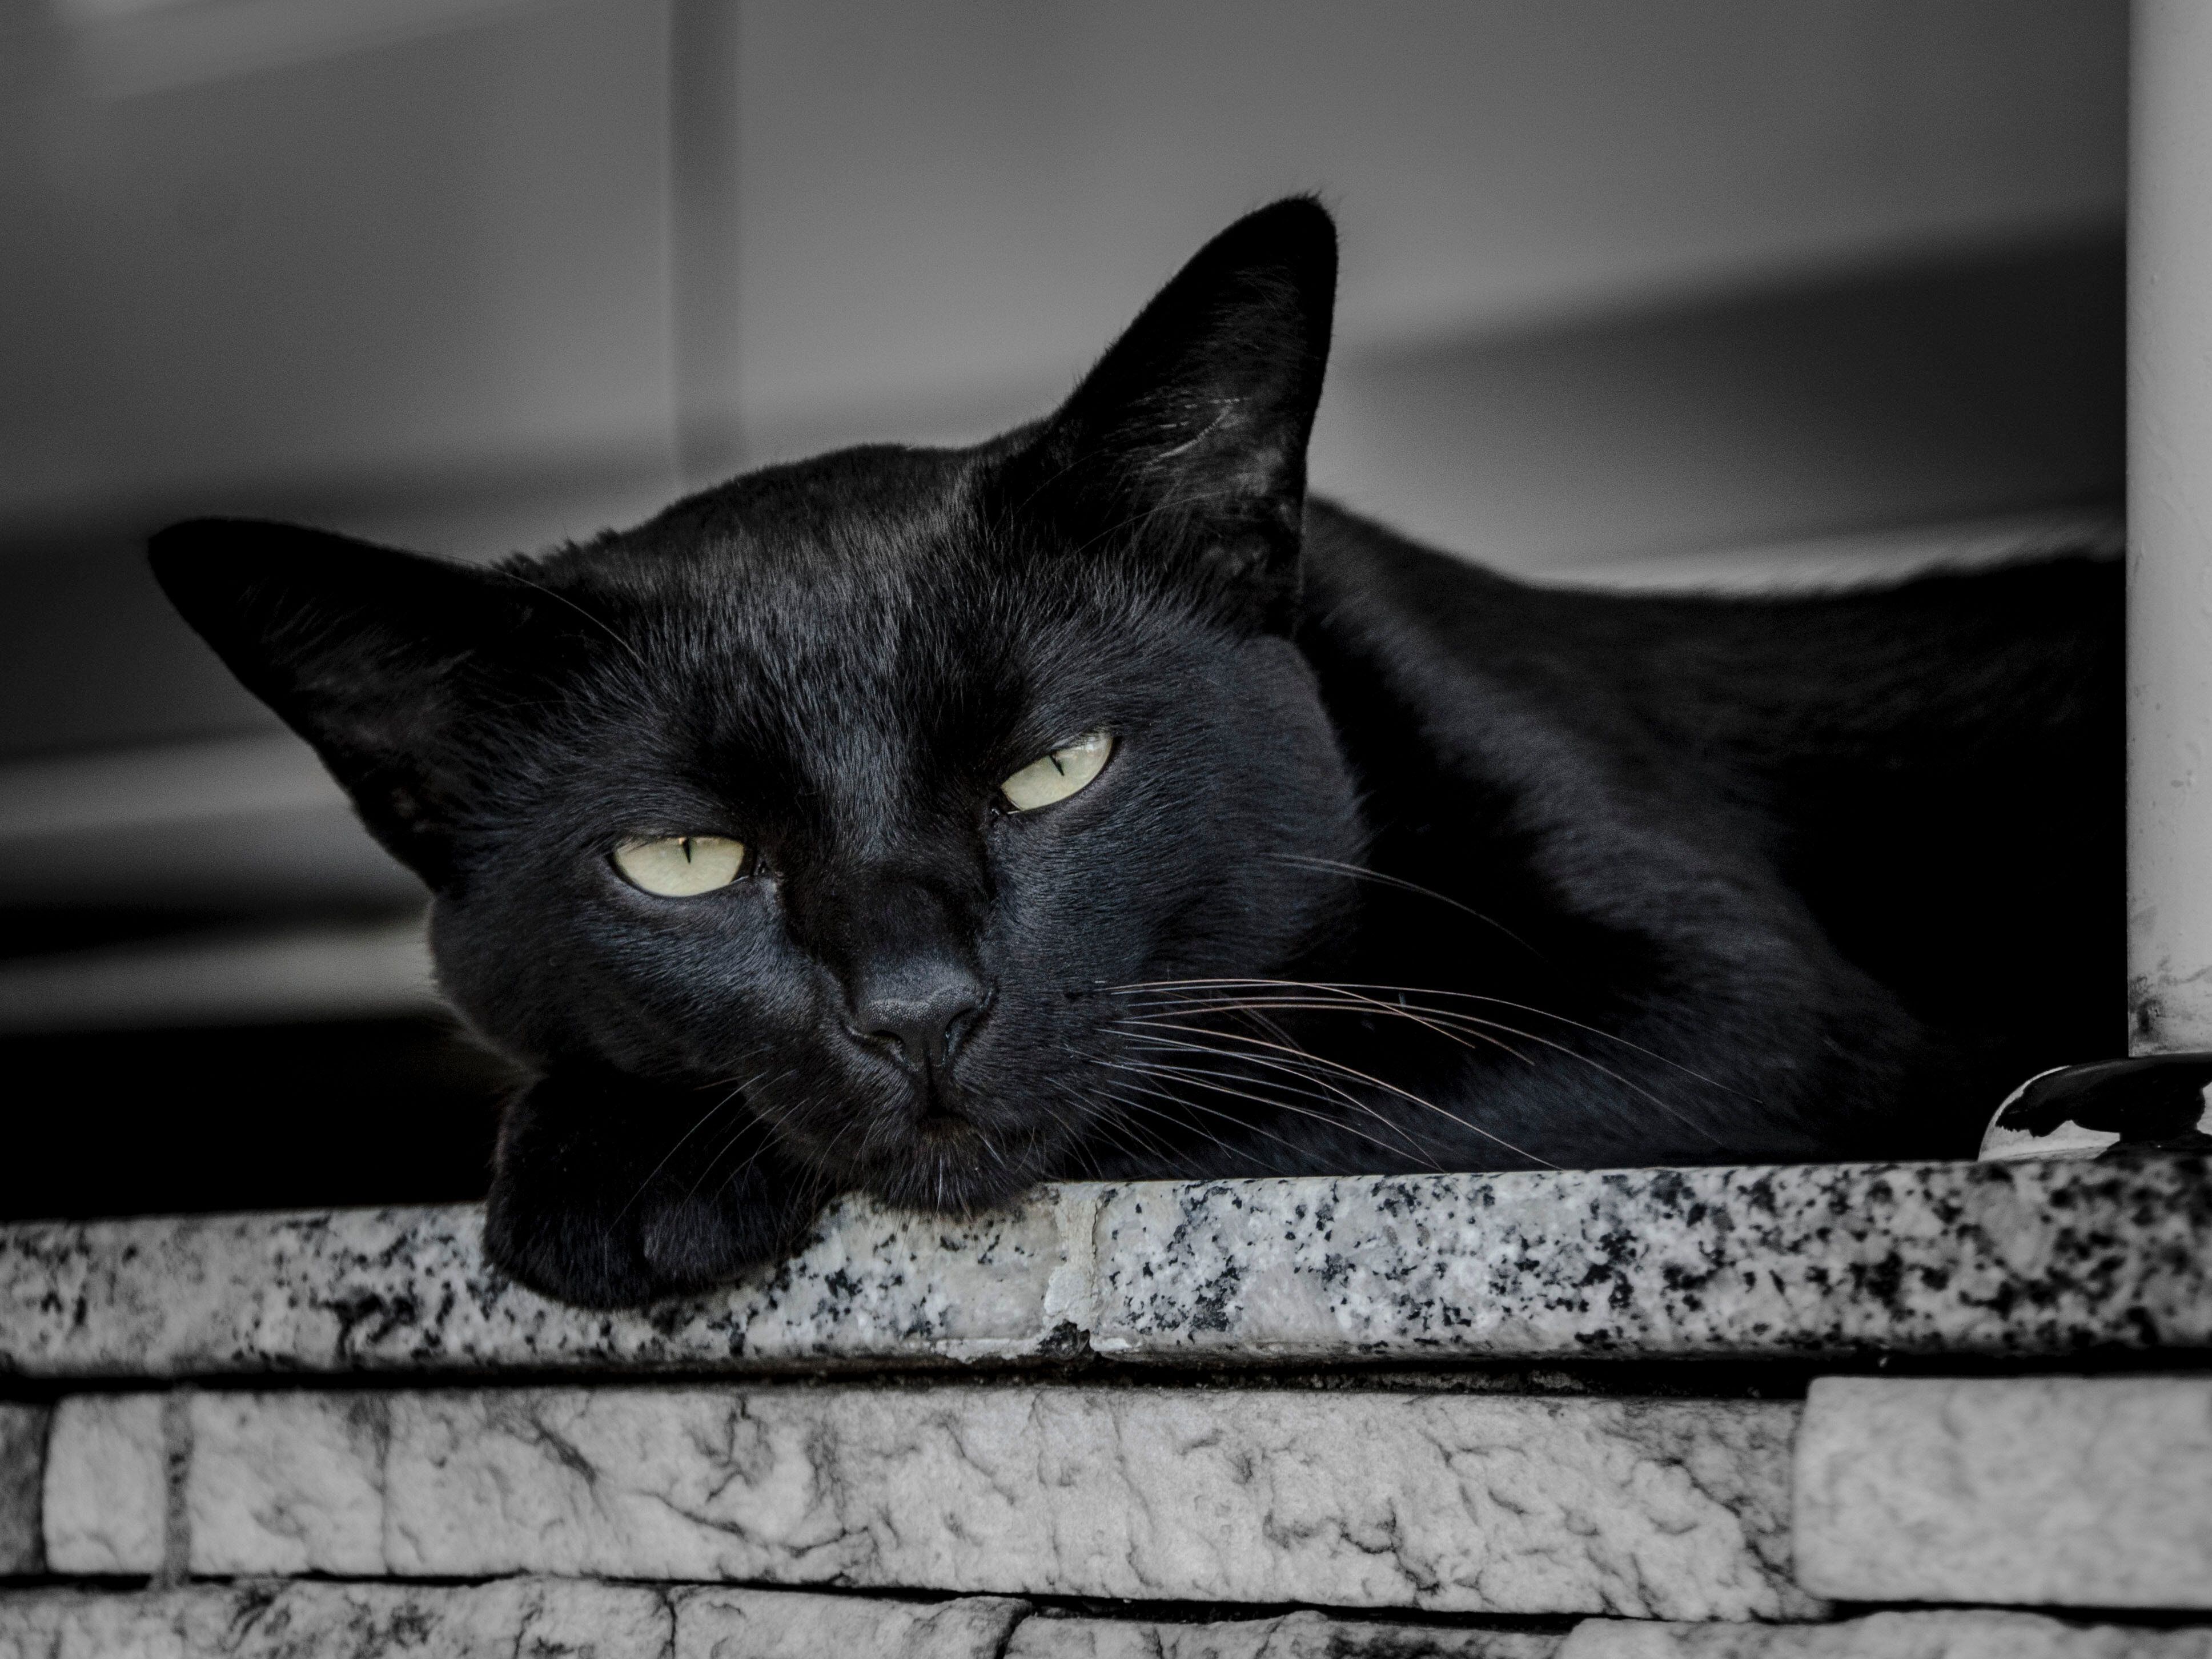 Los gatos negro han sido vinculados al martes 13 y a la mala suerte por años